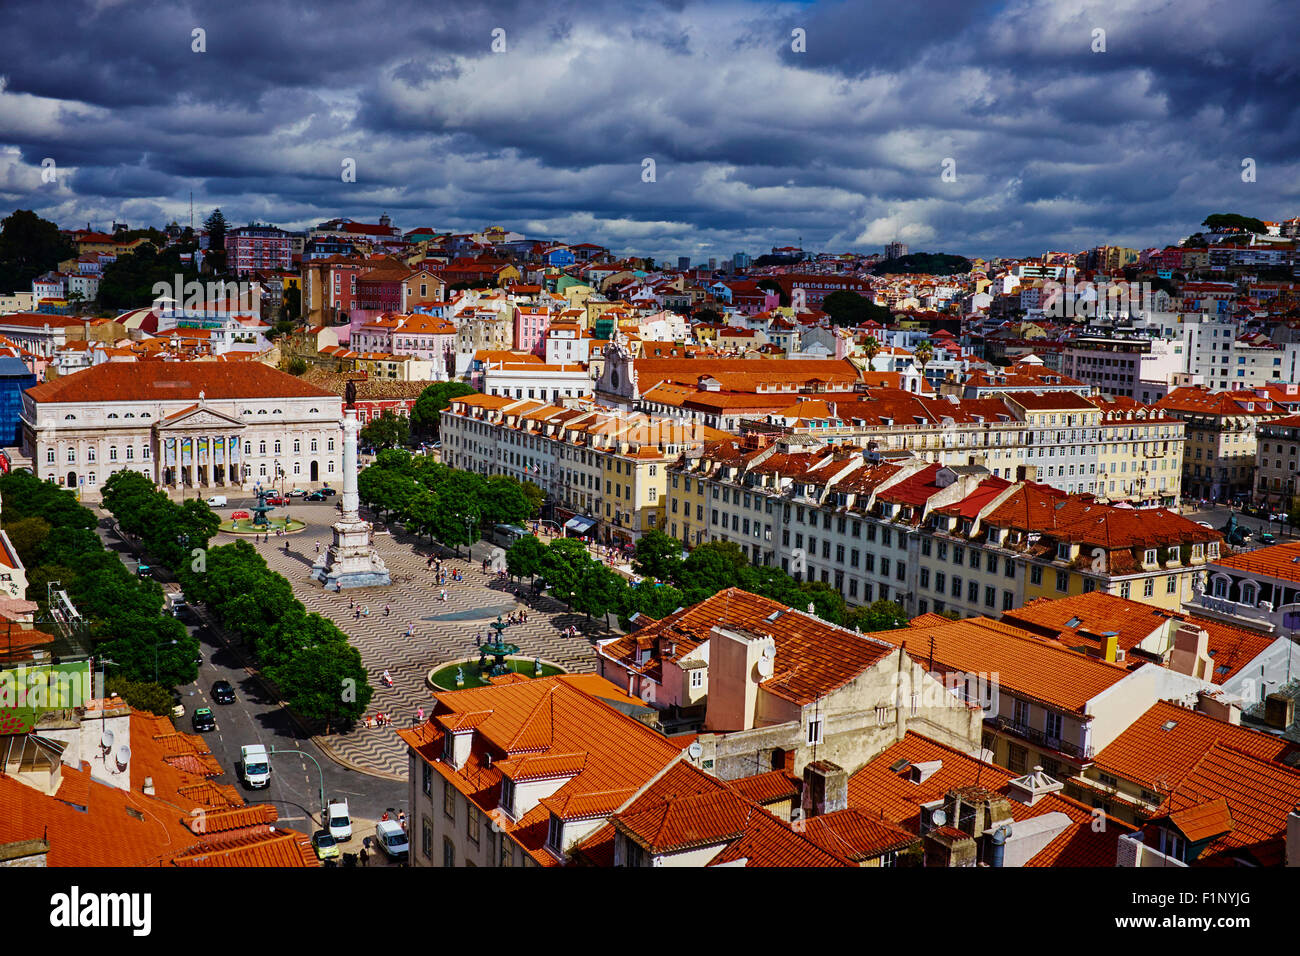 Portugal, Lisbon, Rossio square or Dom Pedro IV square Stock Photo